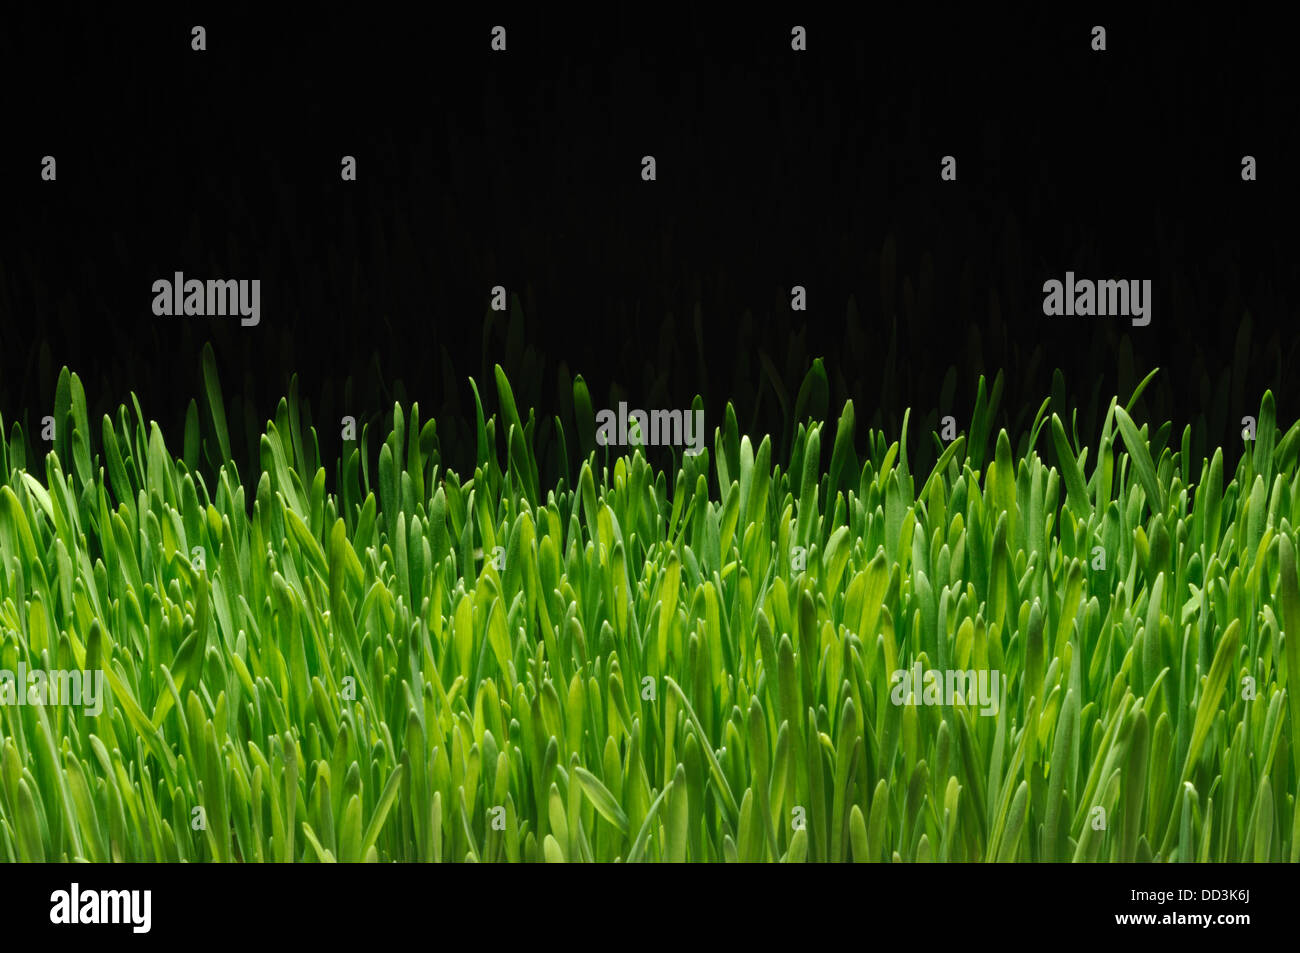 Ein Teil der wachsenden grünen Rasen auf einem schwarzen Hintergrund Stockfoto